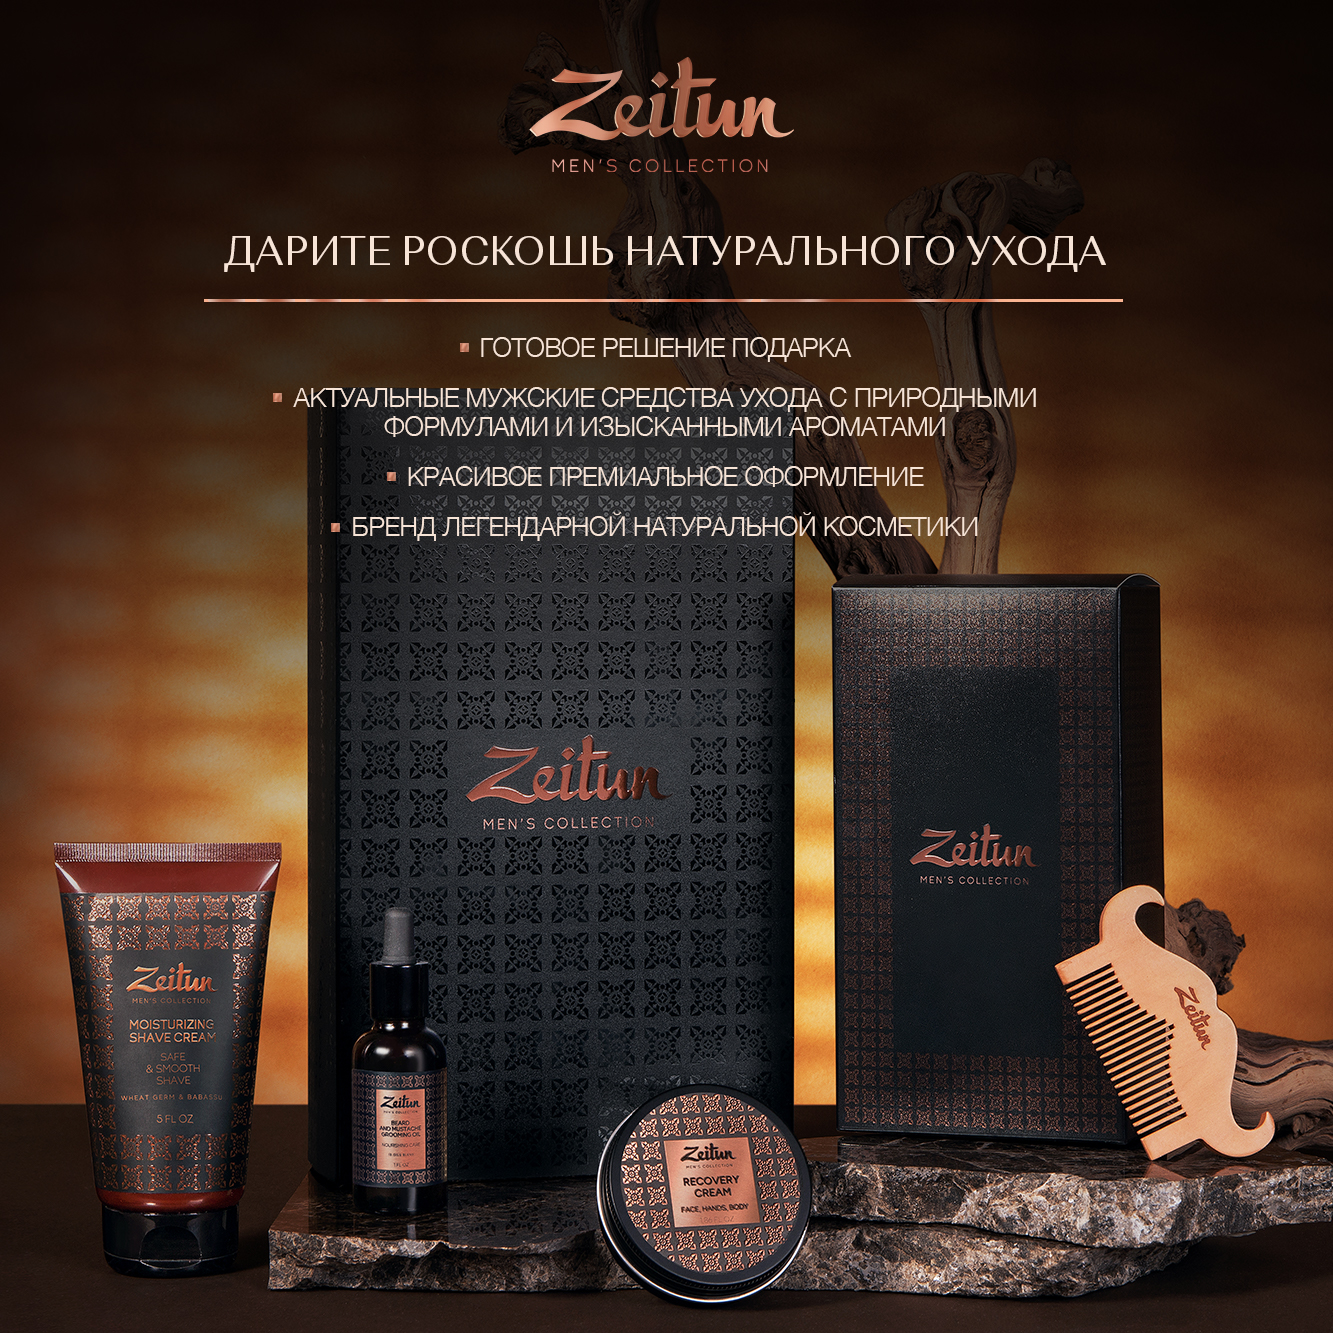 Подарочный набор для мужчин Zeitun "Практичный подход": шампунь, гель для душа и крем для бритья - фото 12